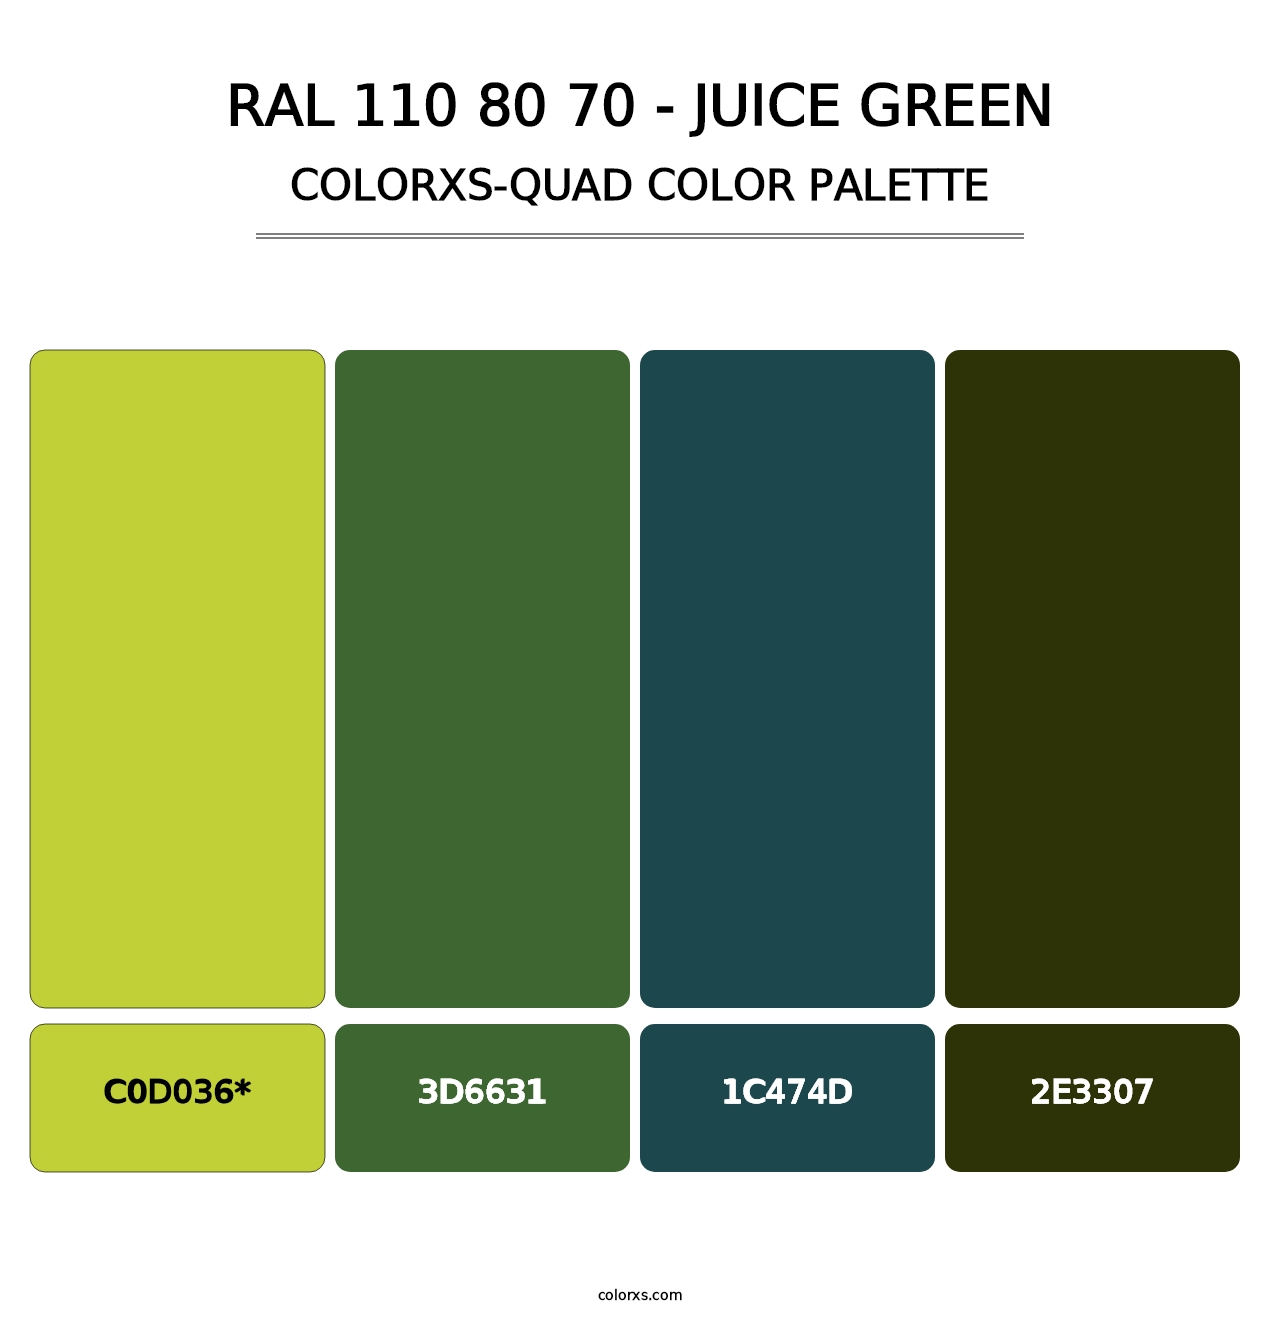 RAL 110 80 70 - Juice Green - Colorxs Quad Palette